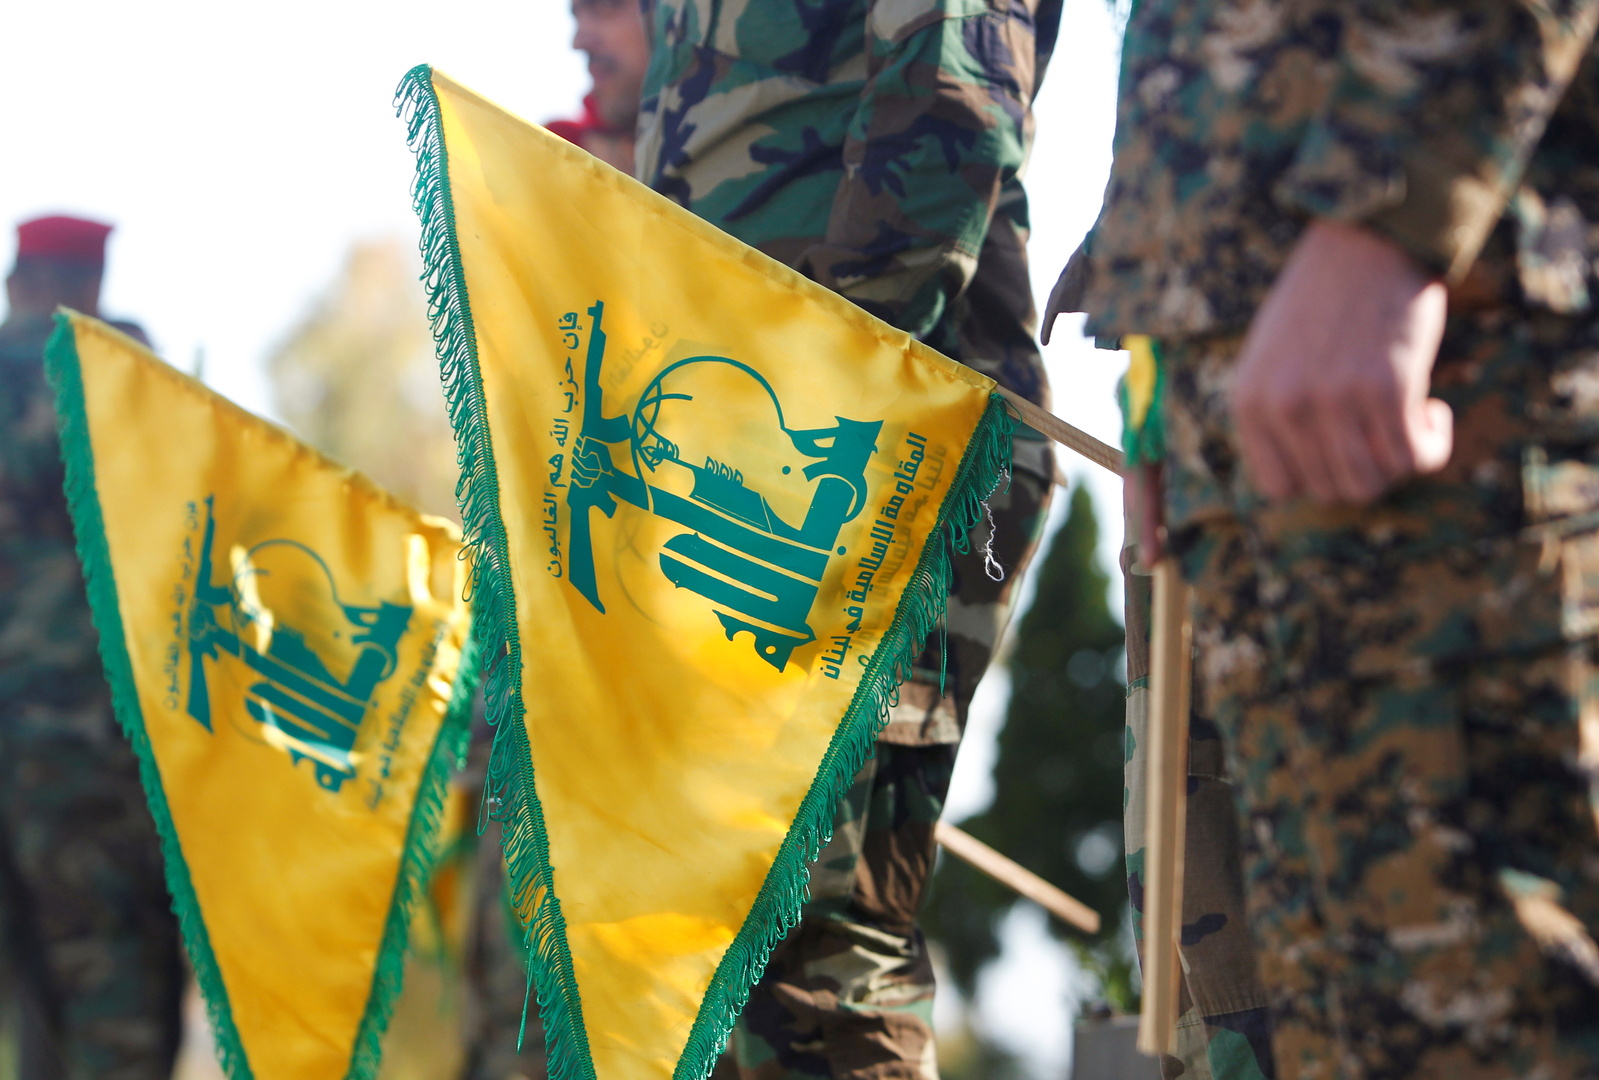 "حزب الله": استهدفنا مبان يتموضع بها ‏جنود الجيش الإسرائيلي في مستوطنة المطلة وأصبناها بشكل مباشر